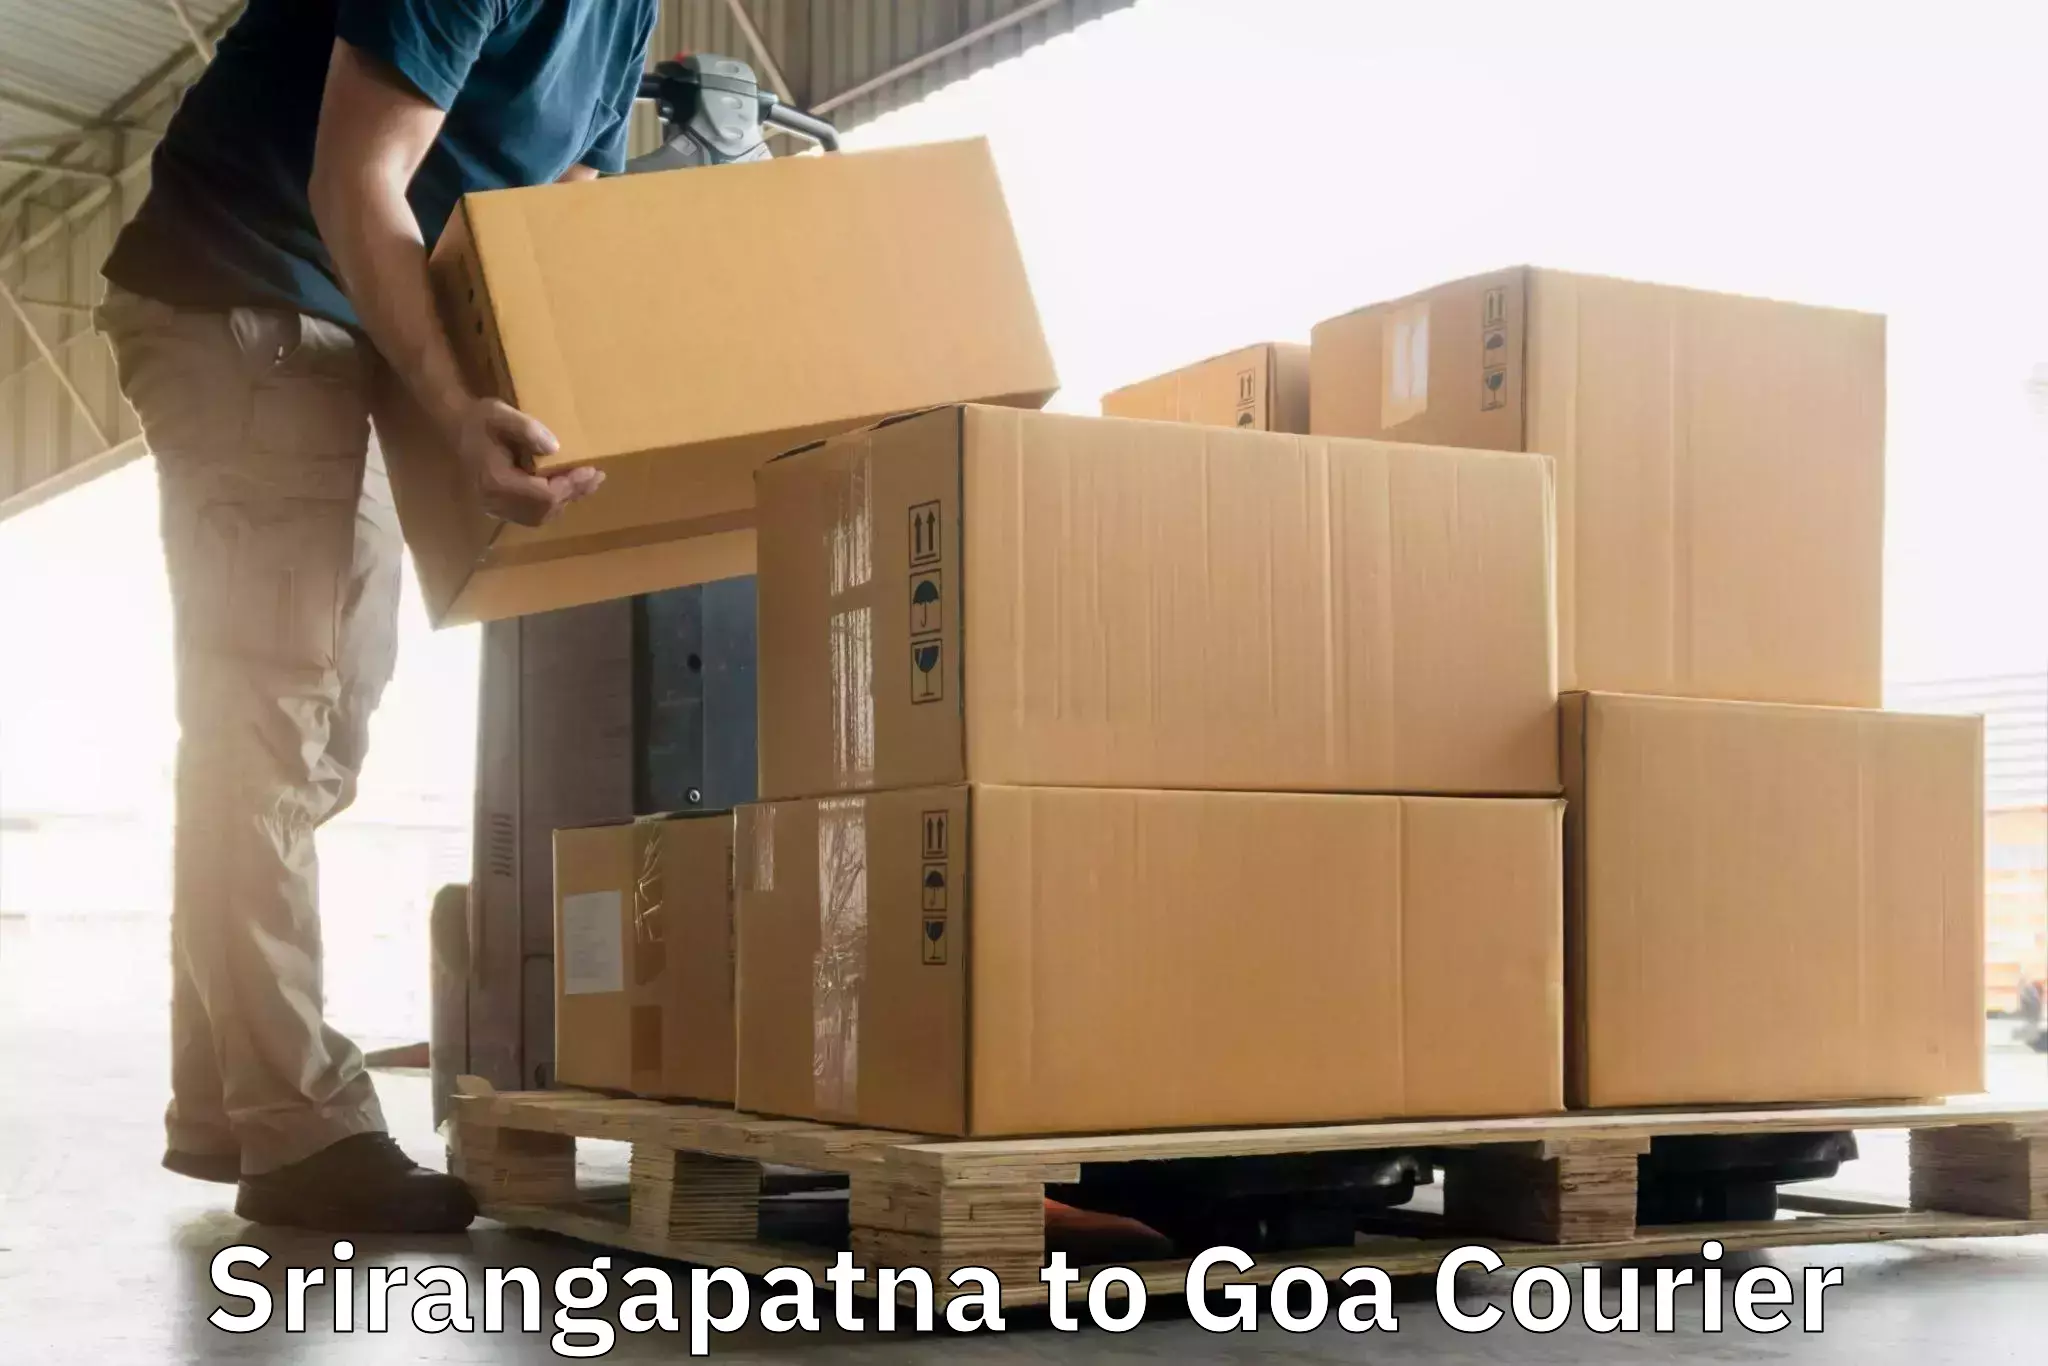 Courier service comparison in Srirangapatna to Margao